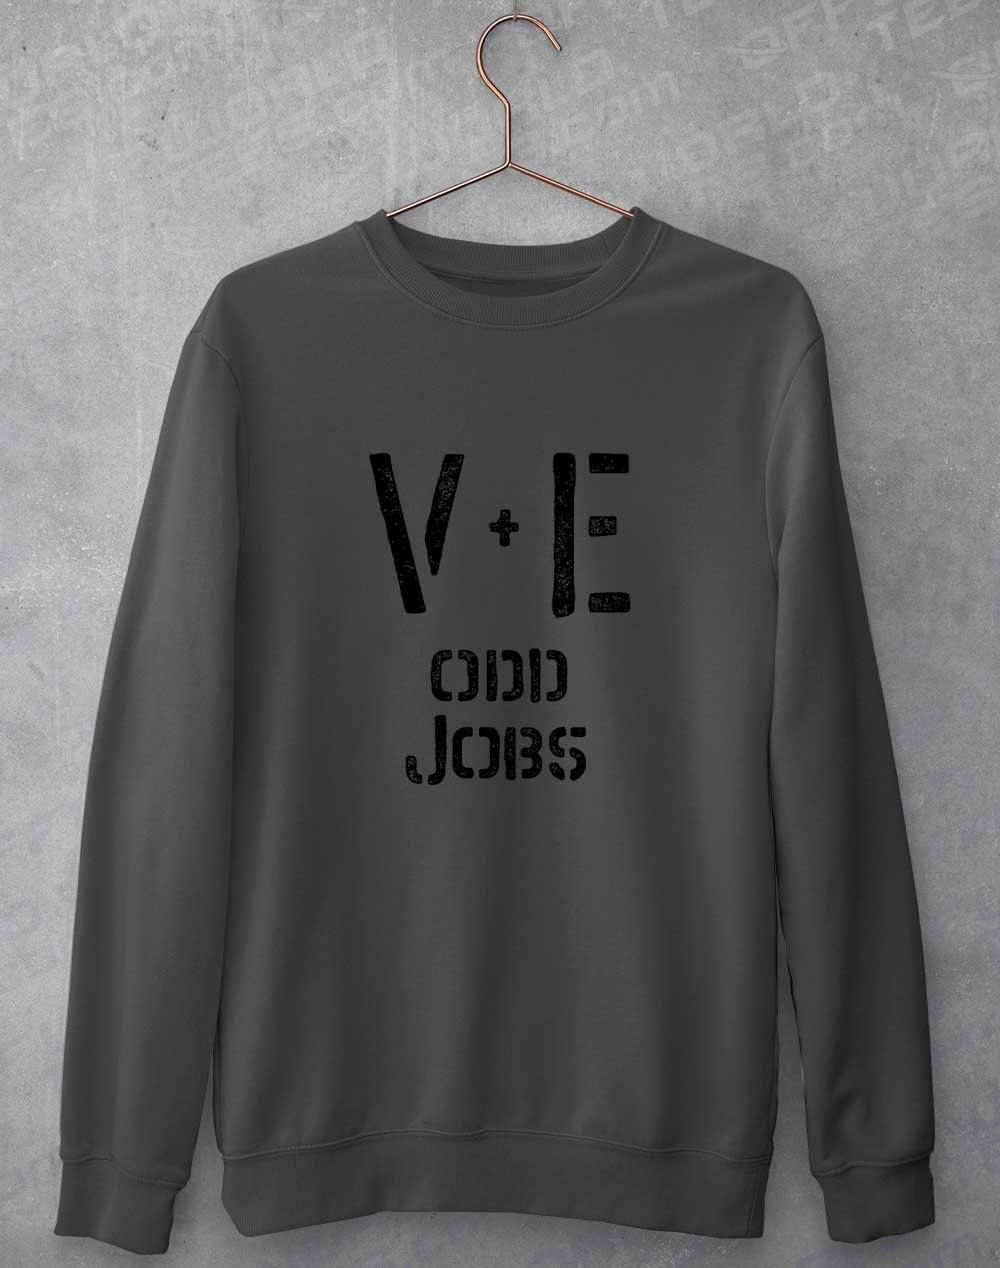 Val and Earl's Odd Jobs Sweatshirt XS / Charcoal  - Off World Tees